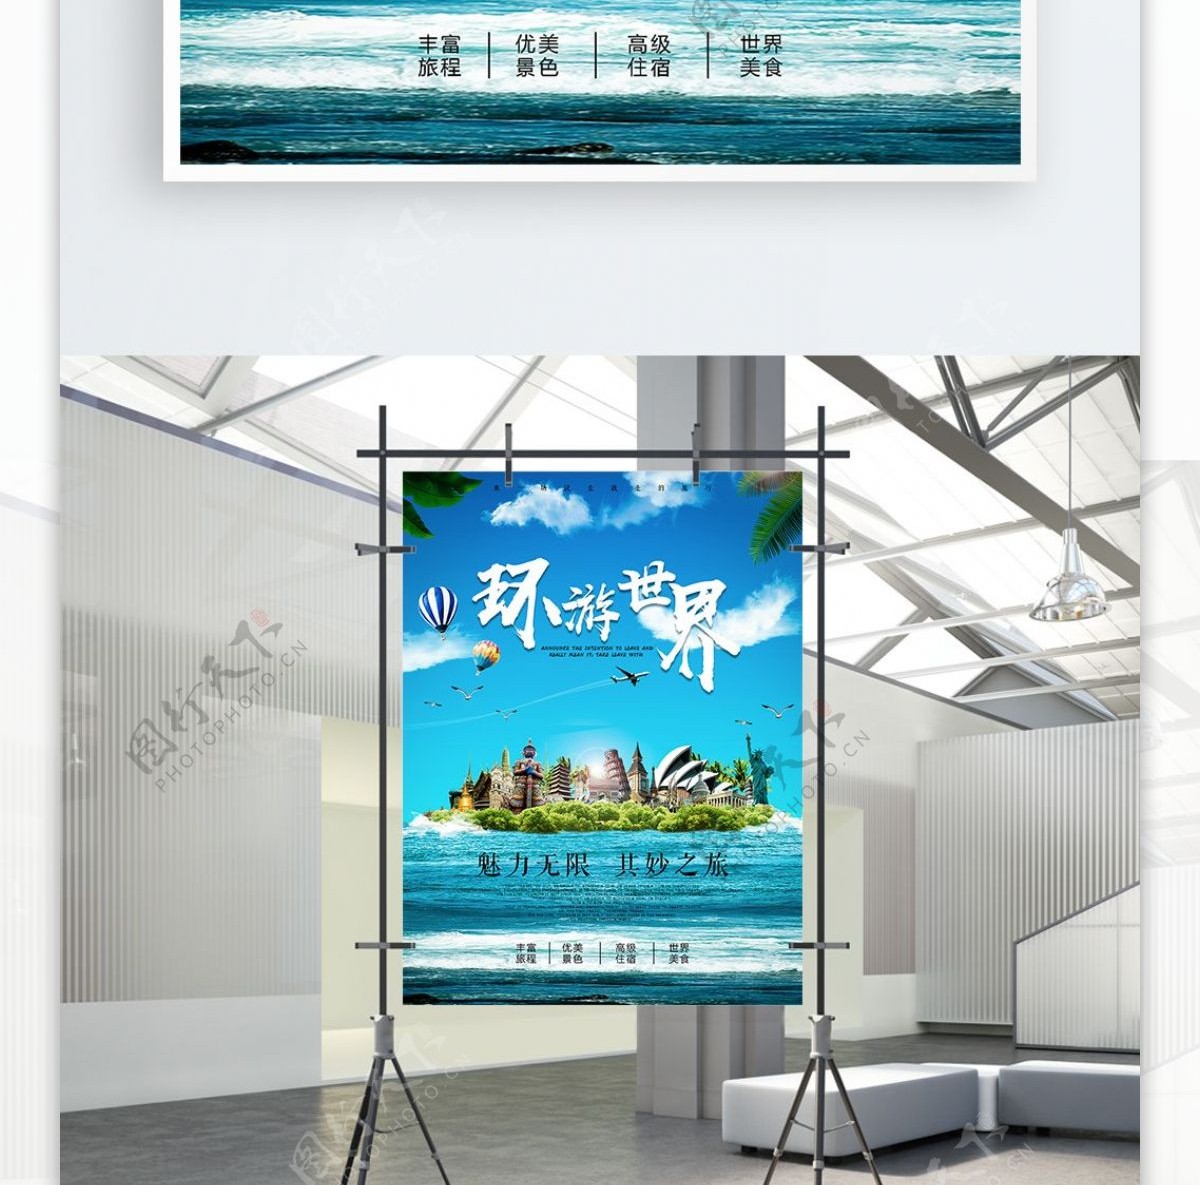 环游世界旅游旅行团宣传海报